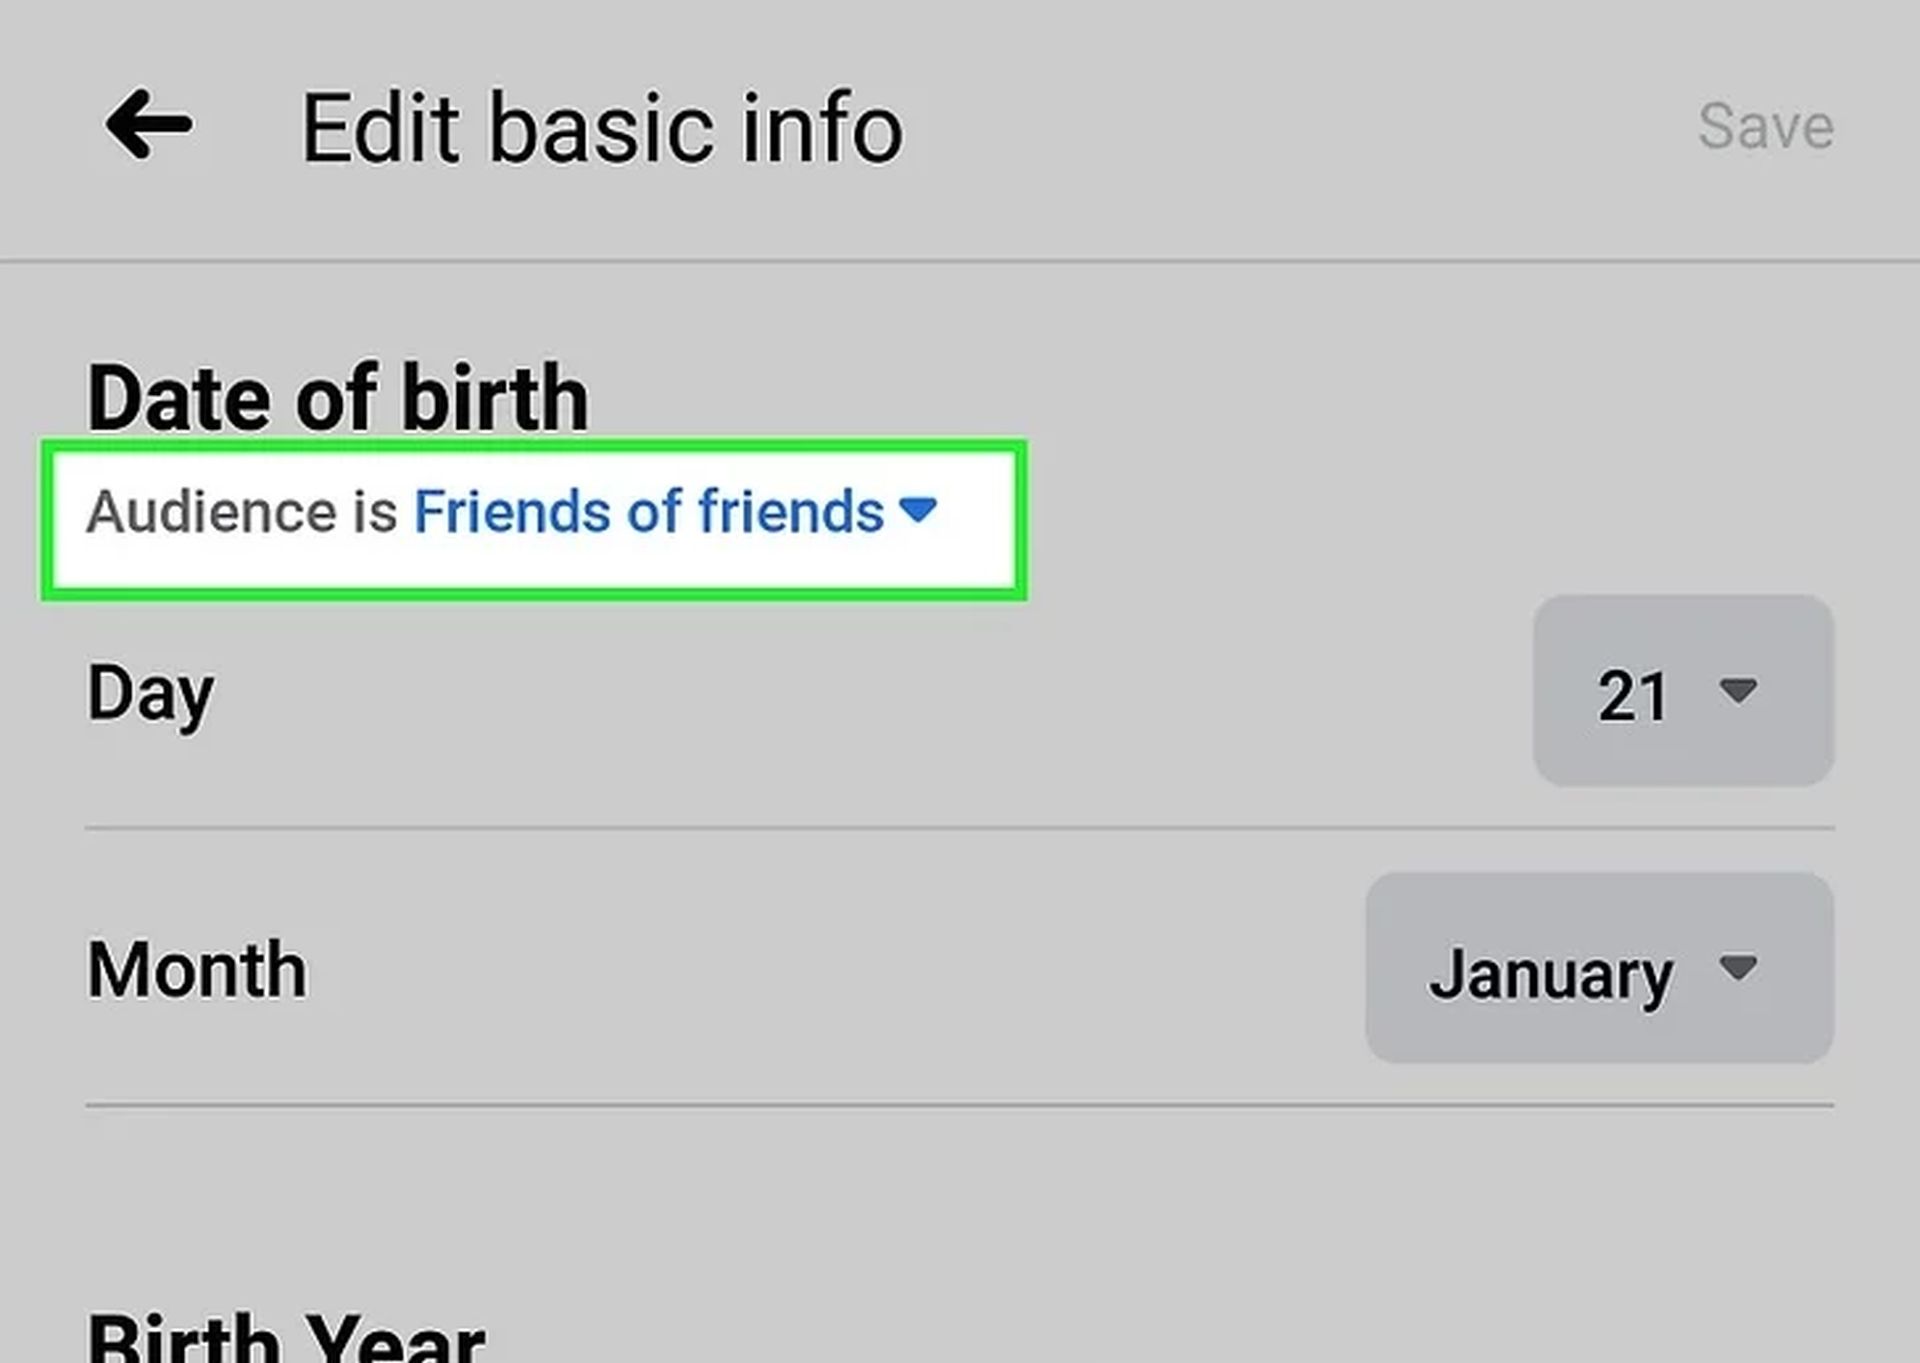 Vandaag gaan we bespreken hoe u uw verjaardag op Facebook kunt wijzigen en hoe u uw verjaardag kunt verbergen, zodat u uw profiel kunt aanpassen zoals u dat wilt.